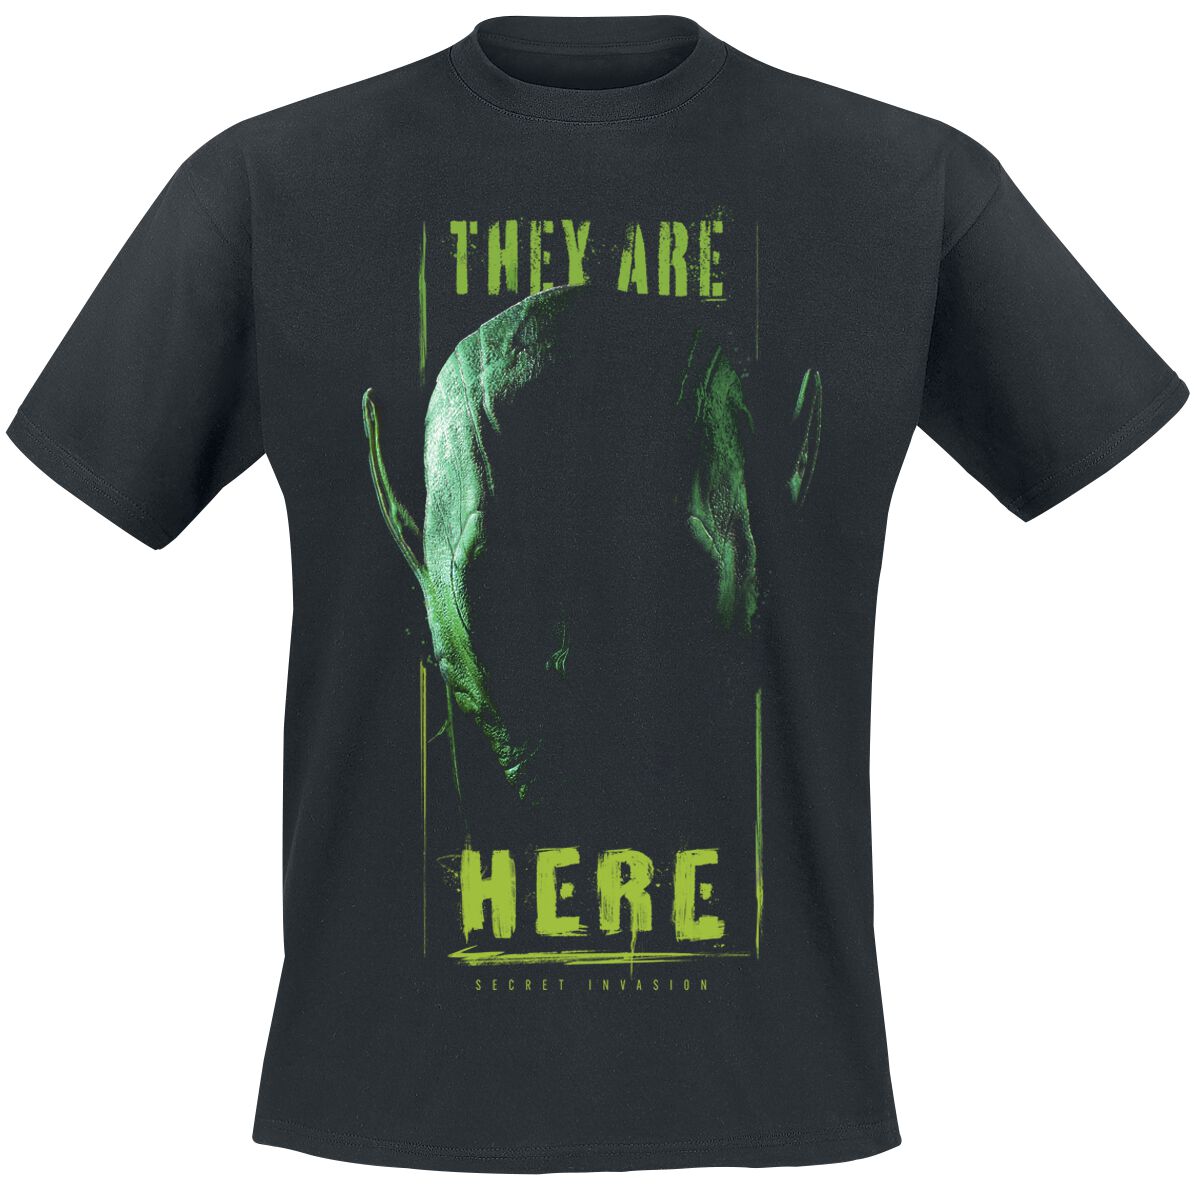 Secret Invasion - Marvel T-Shirt - They Are Here - S bis XXL - für Männer - Größe M - schwarz  - EMP exklusives Merchandise!